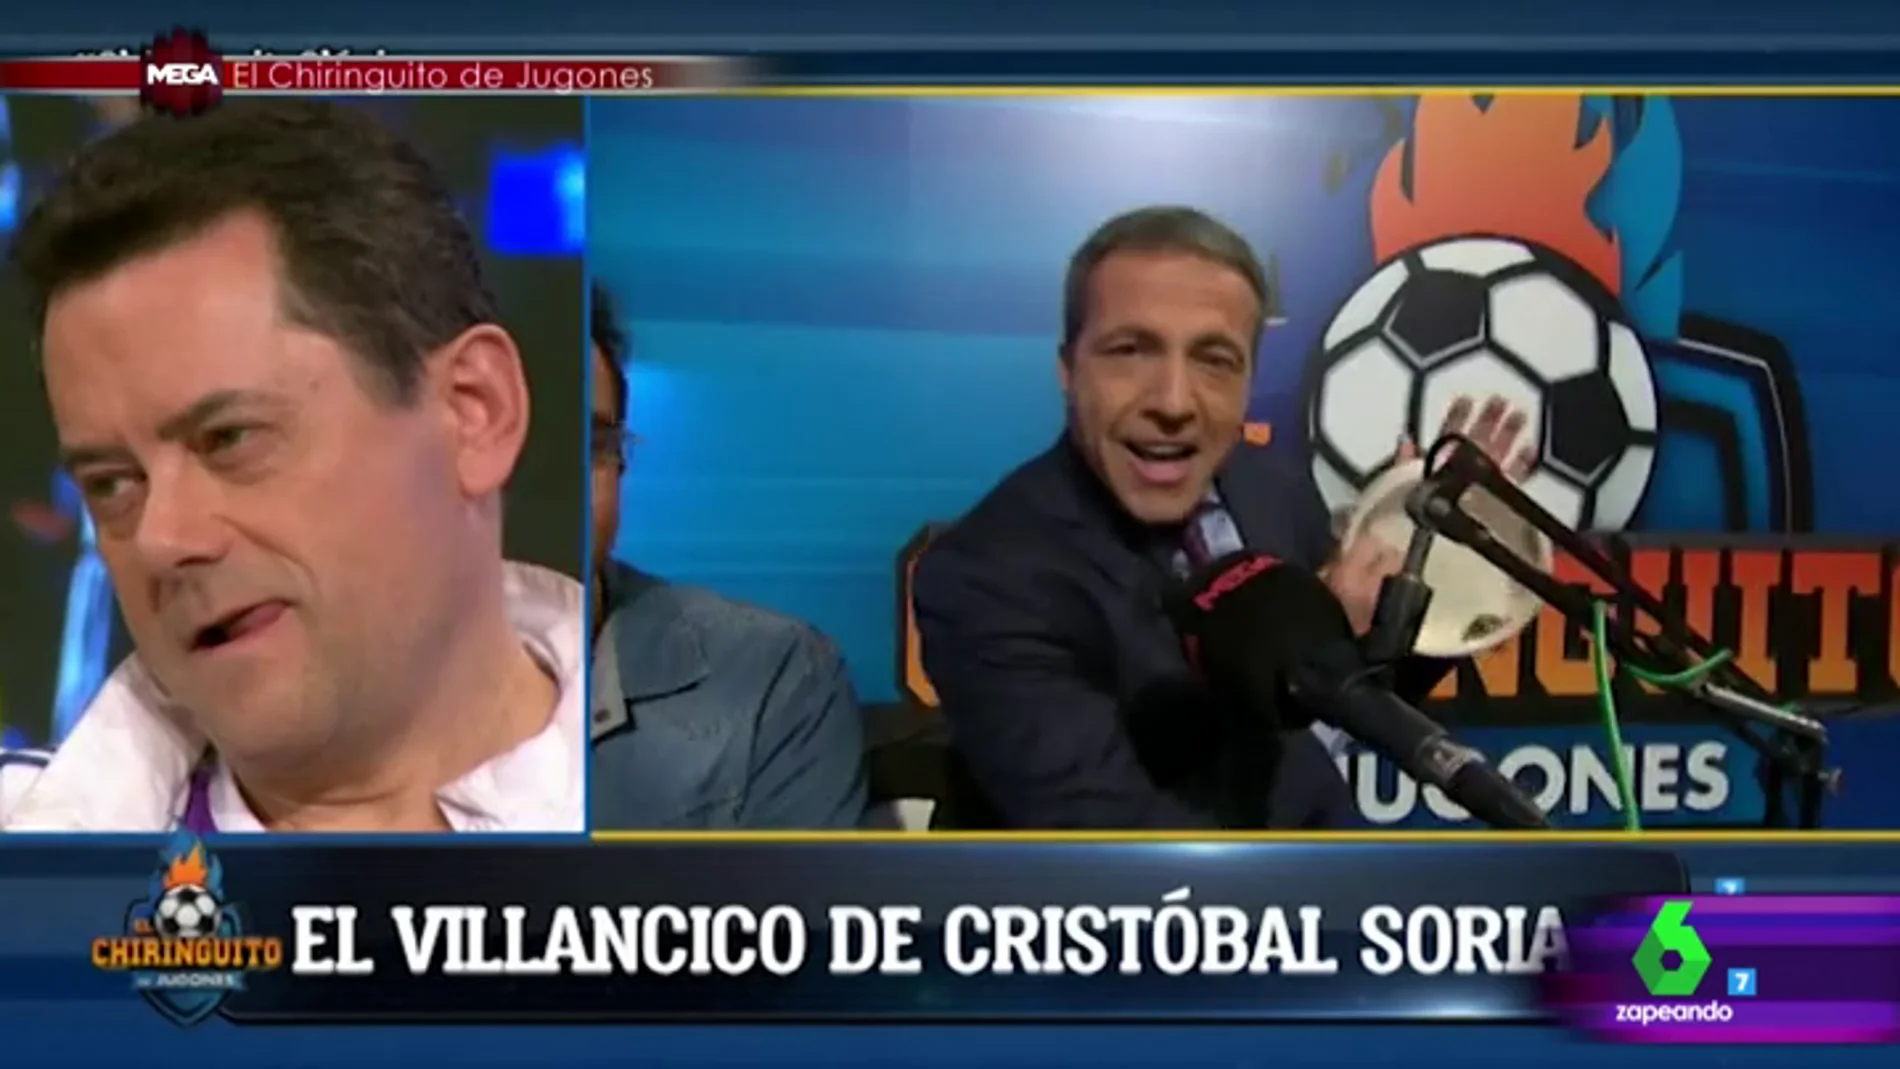 Cristina Pedroche alucina con el villancico de Cristóbal Soria: "Cristóbal Soria no es un comentarista deportivo, es Cristobalito de Triana"